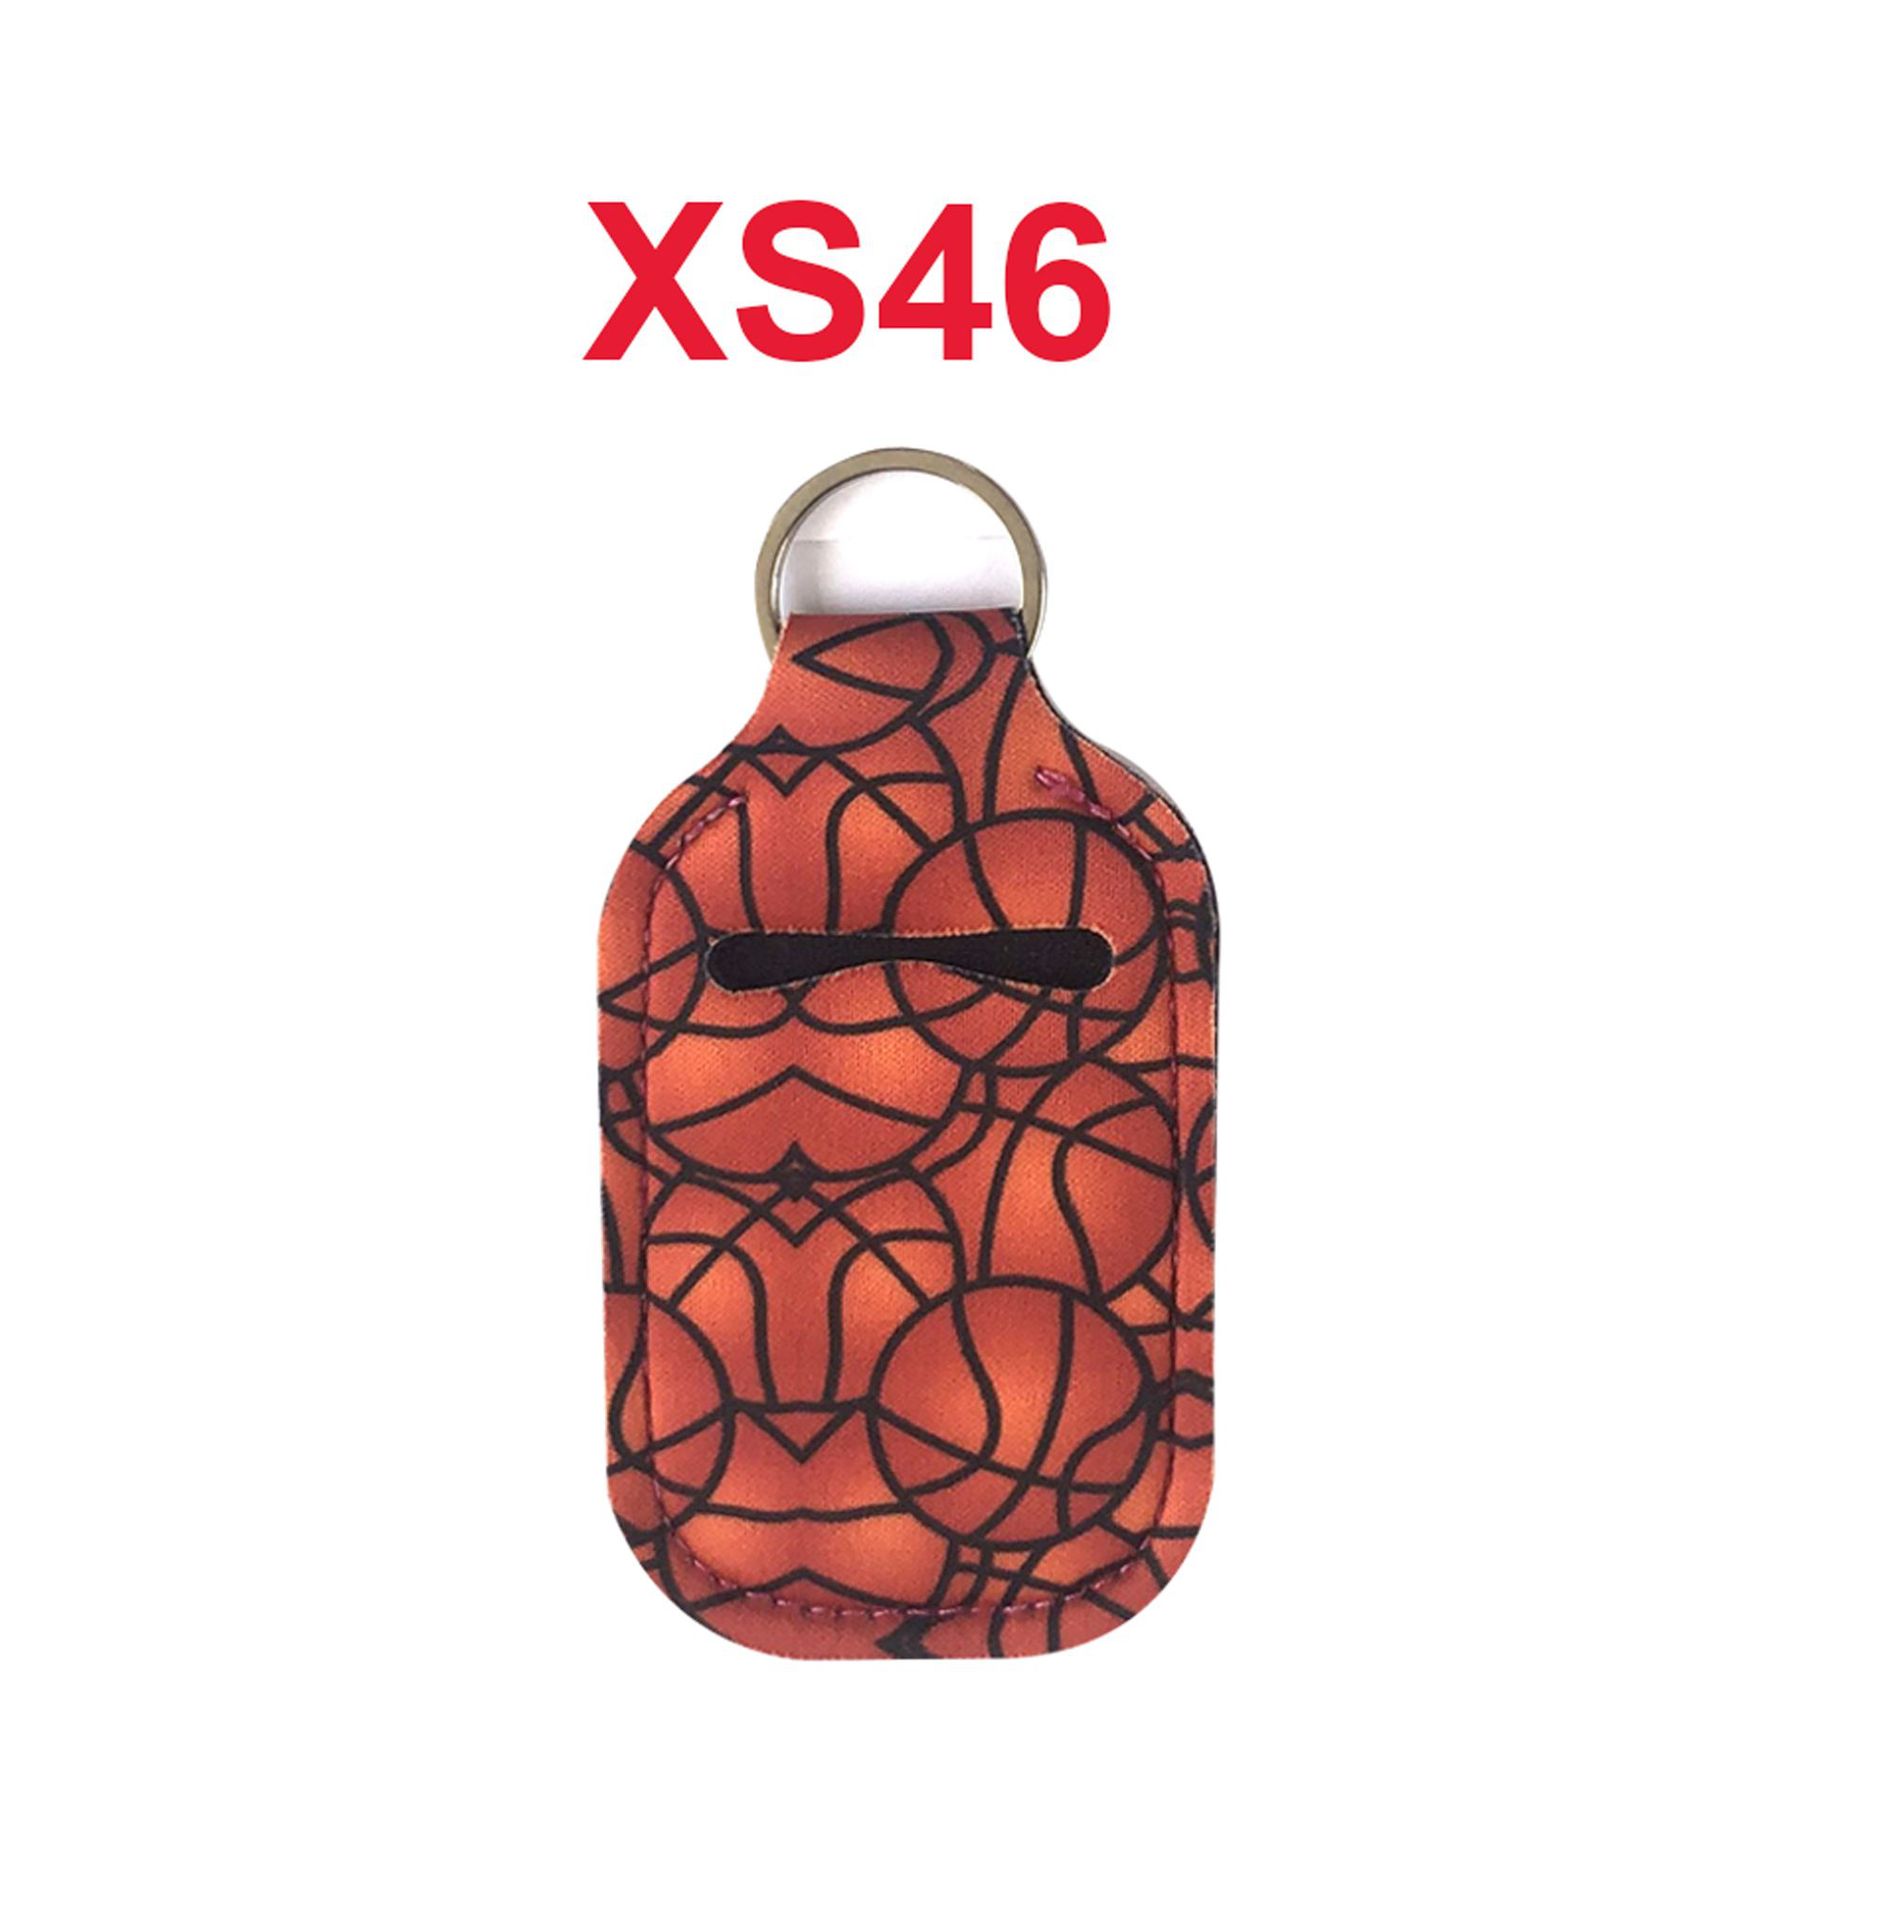 XS46